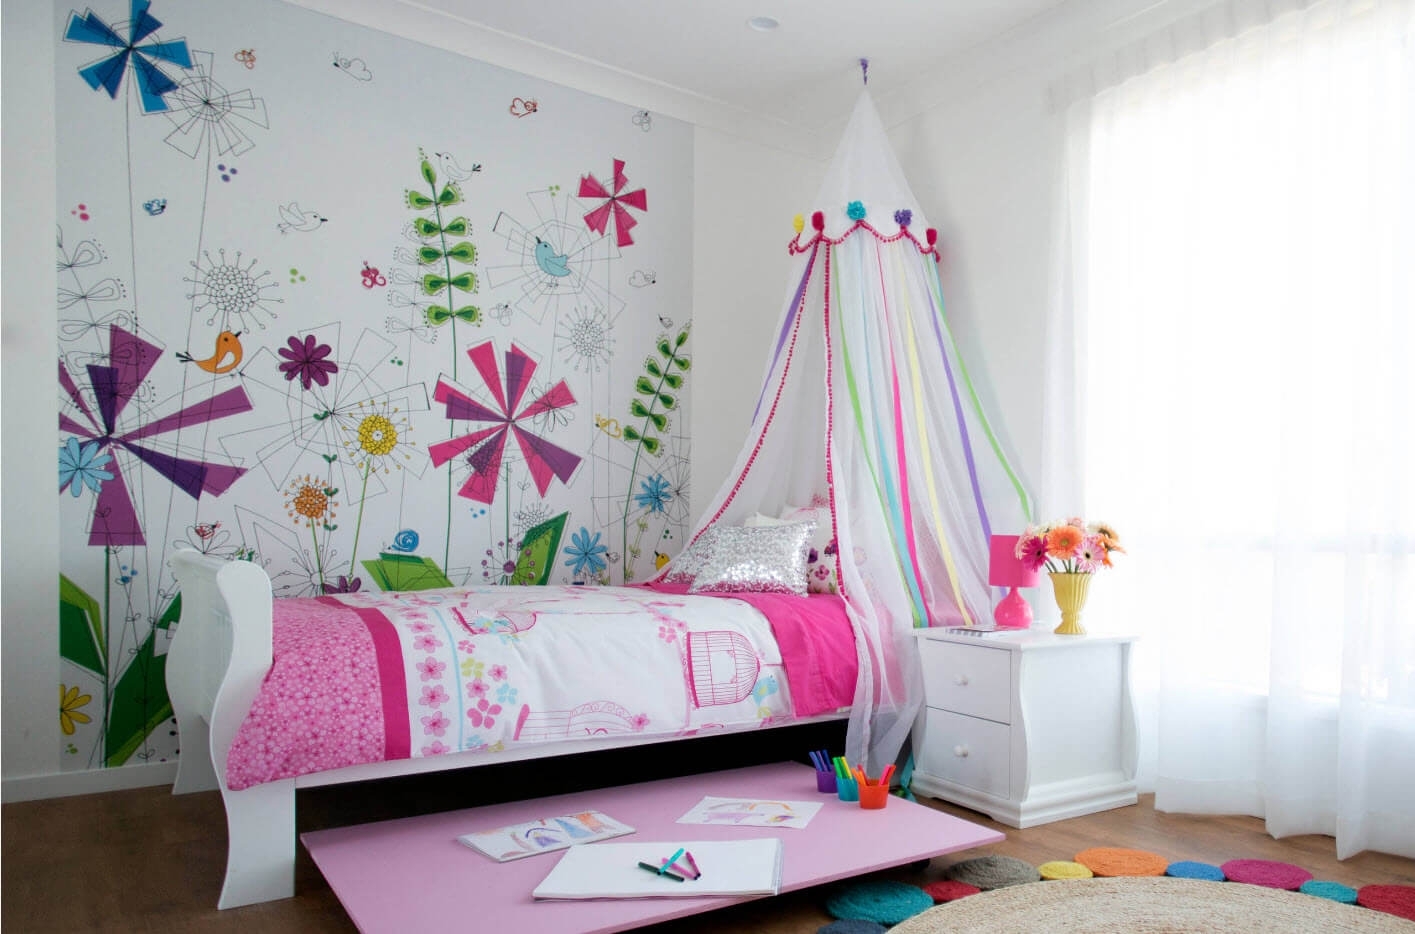 Идеи для детской комнаты: мебелируем и декорируем зону для ребенка